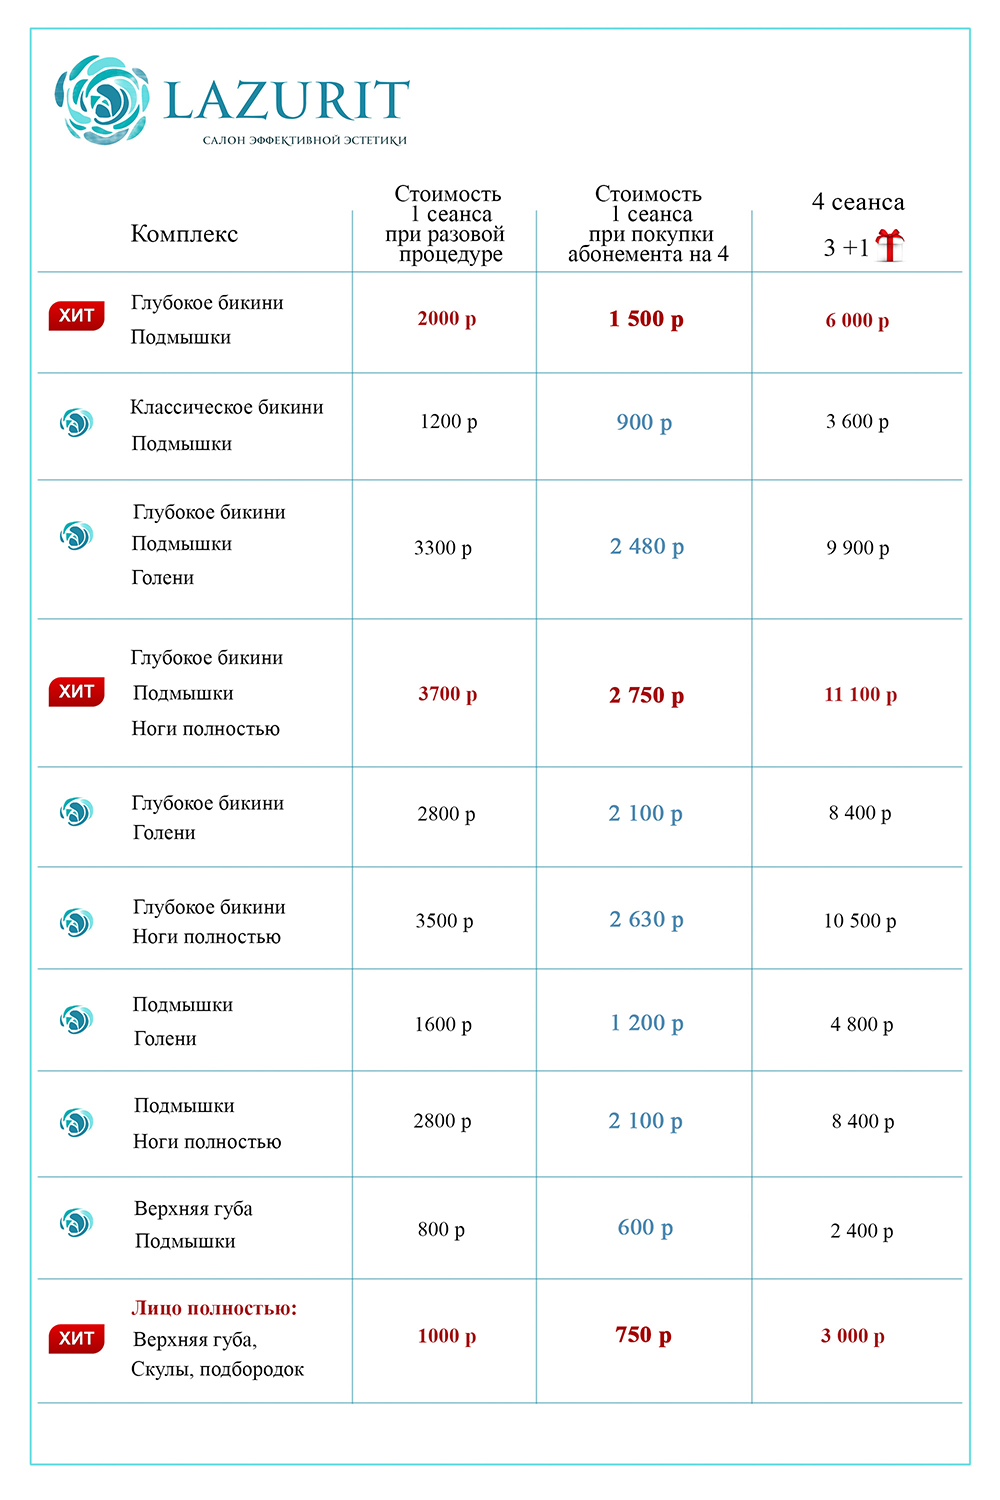 Цены на лазерную эпиляцию в Воронеже - по зонам